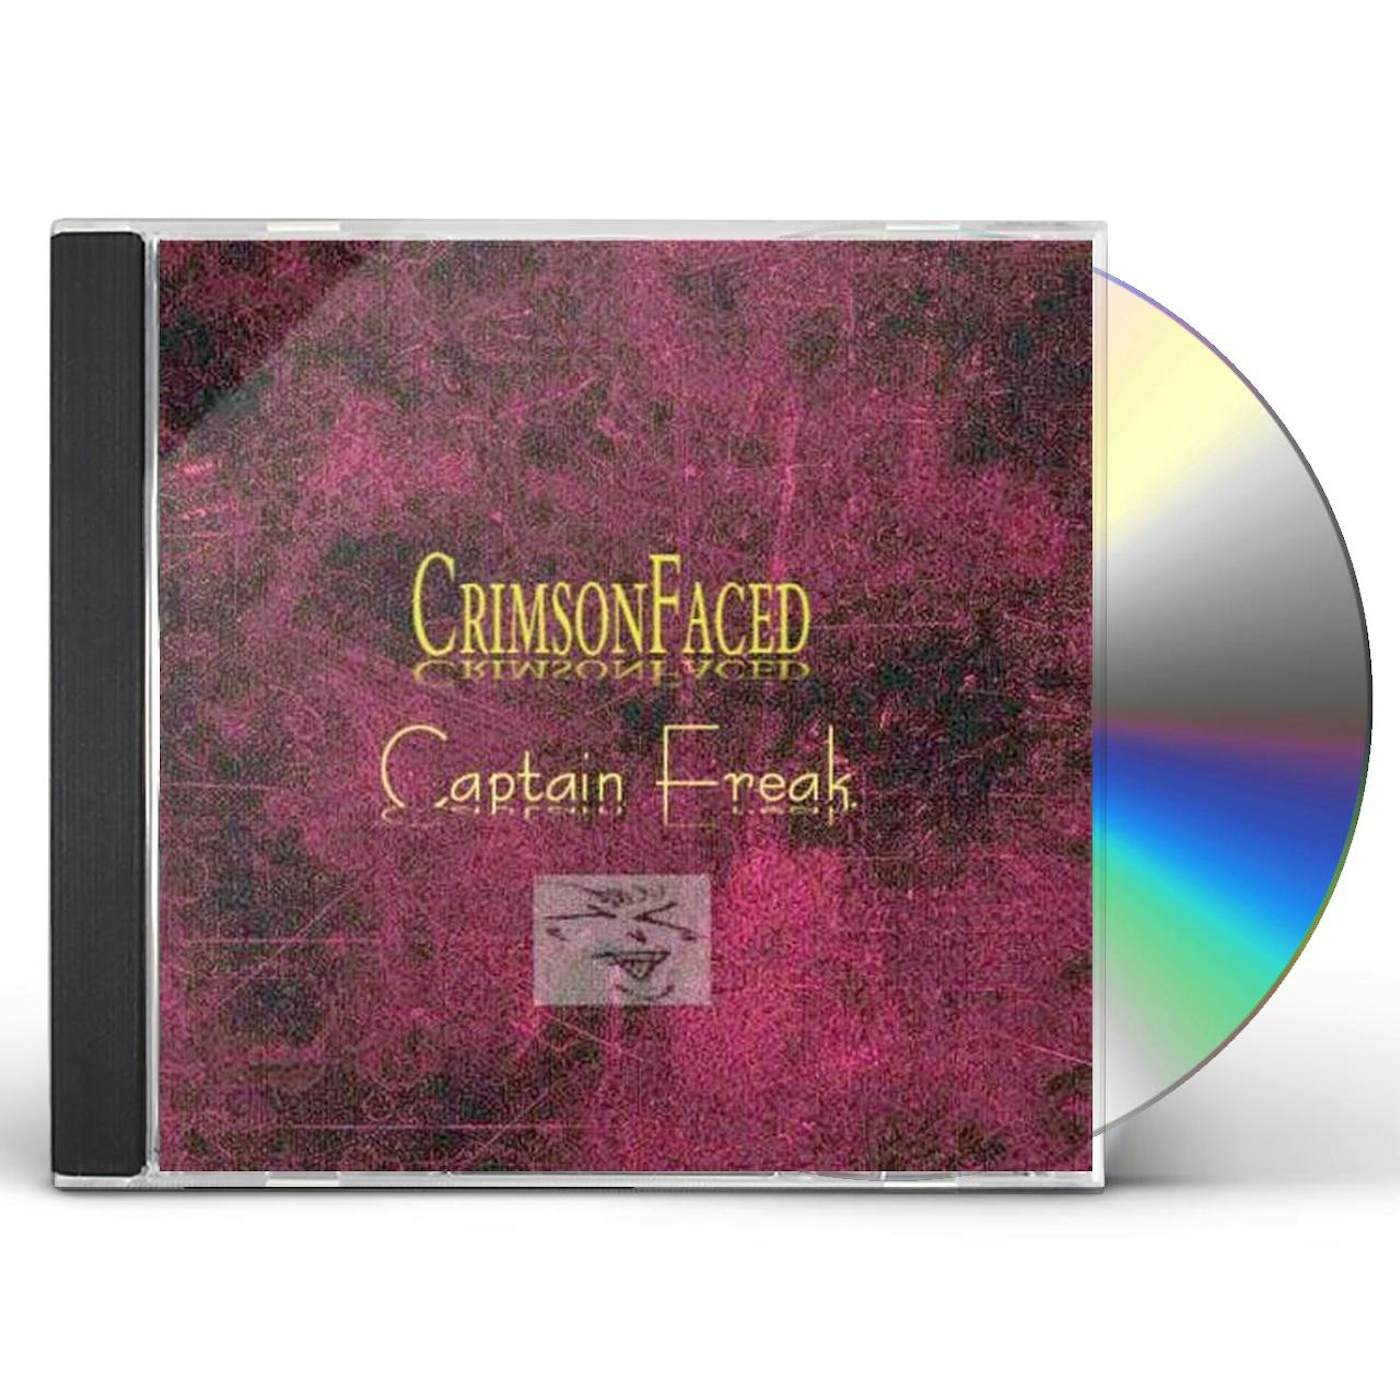 CrimsonFaced CAPTAIN FREAK CD